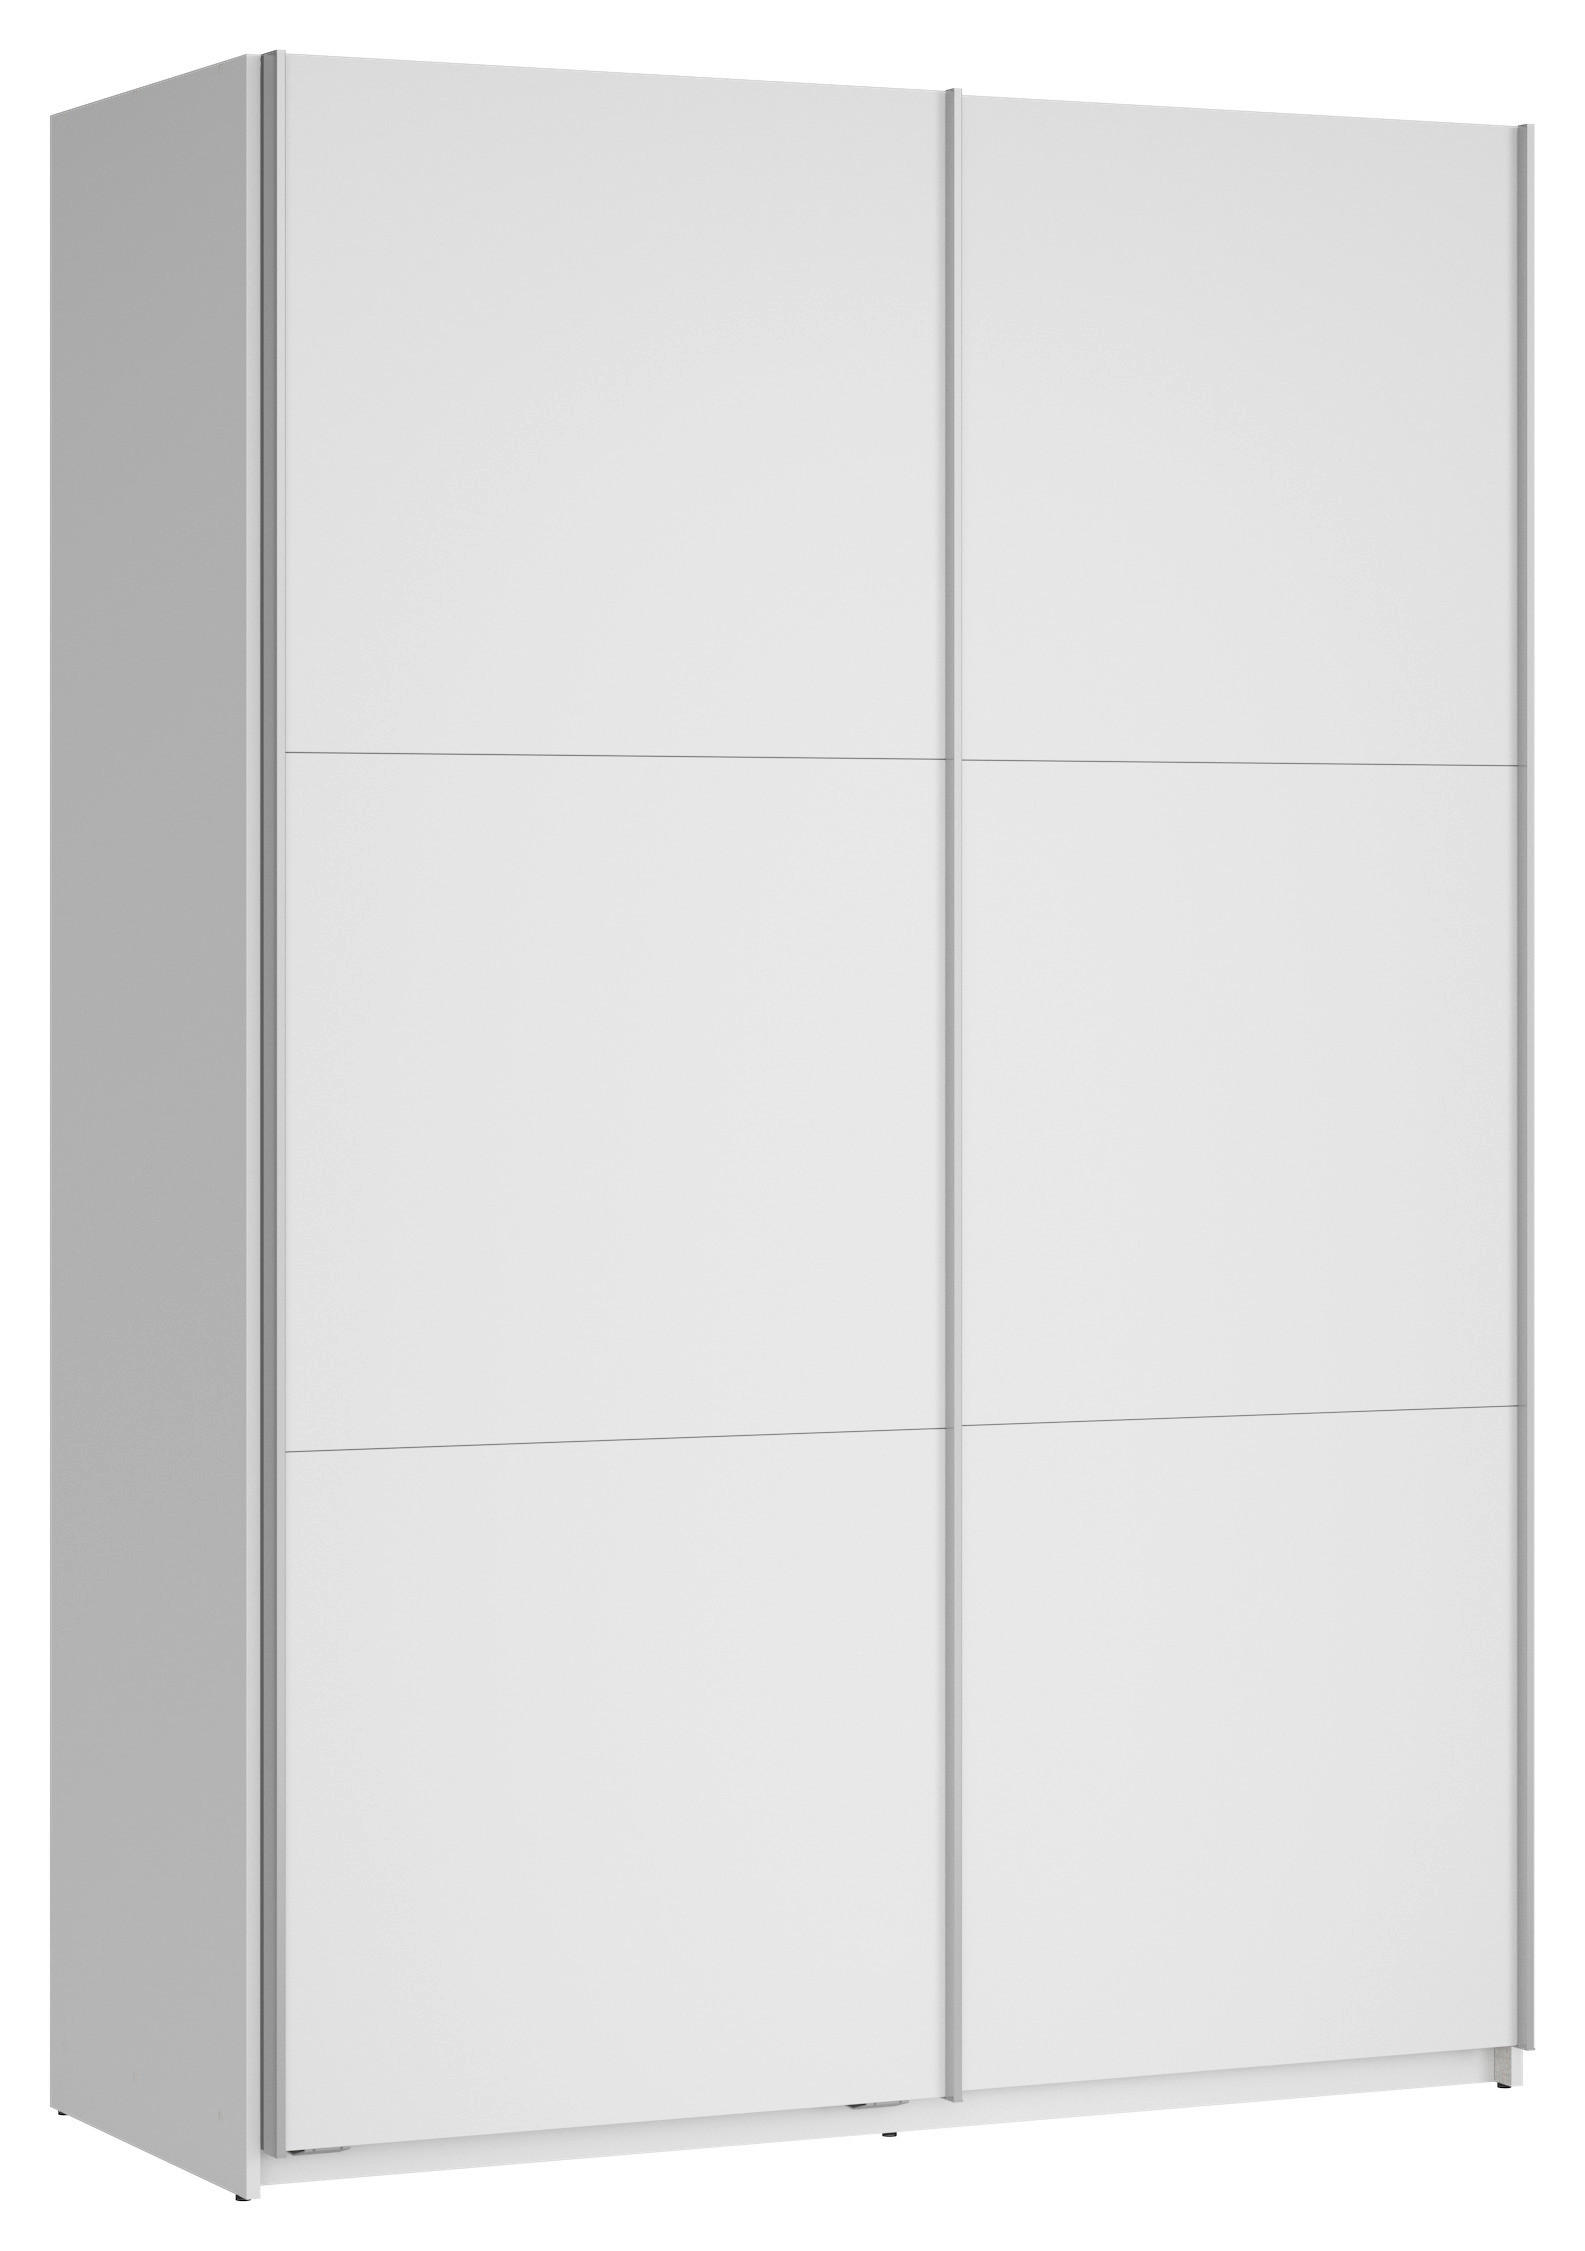 SCHWEBETÜRENSCHRANK 153/218,5/60 cm 2-türig  - Silberfarben/Weiß, MODERN, Holzwerkstoff (153/218,5/60cm) - MID.YOU